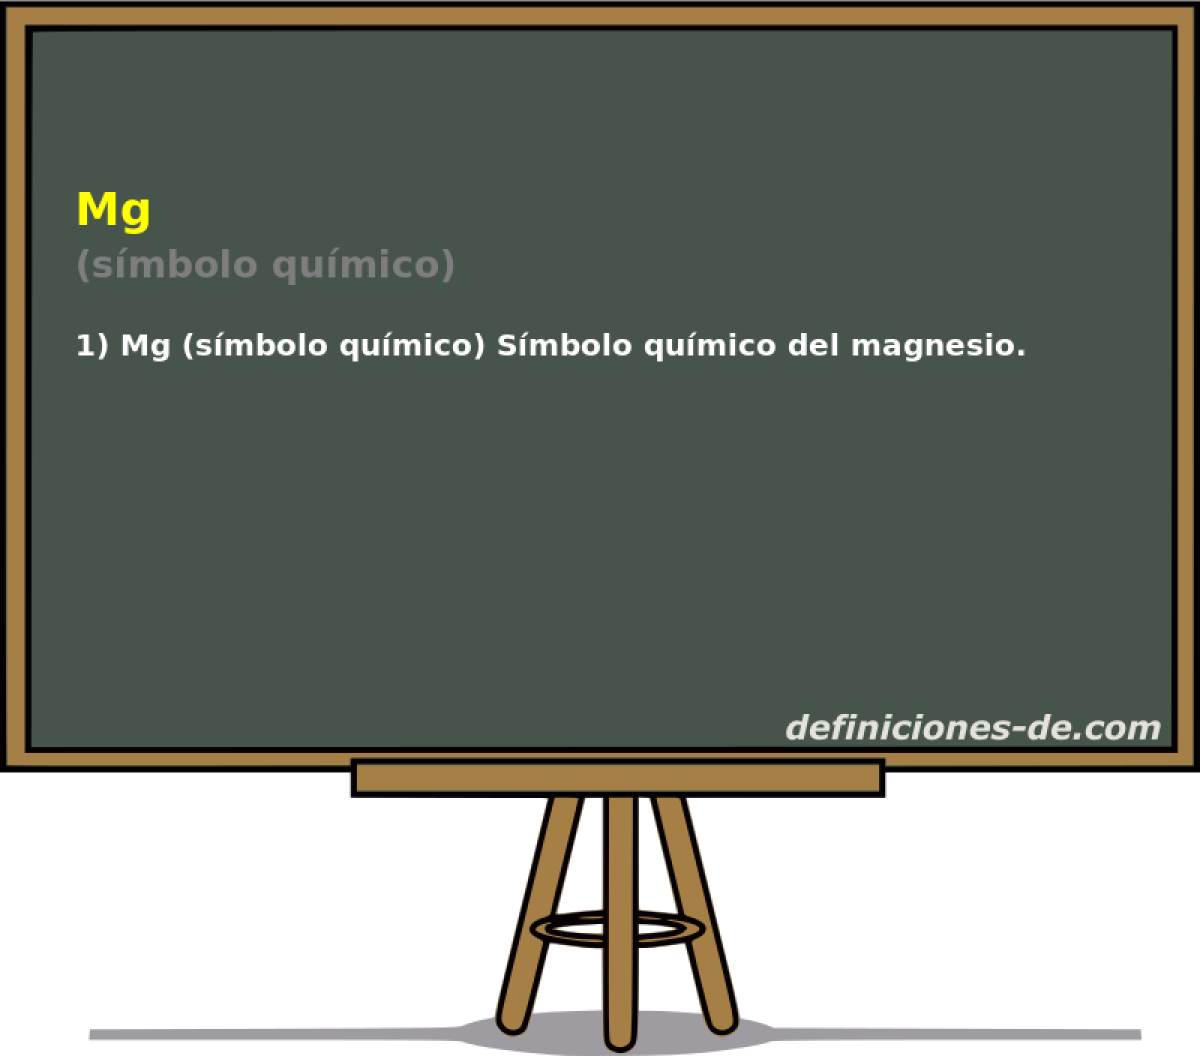 Mg (smbolo qumico)